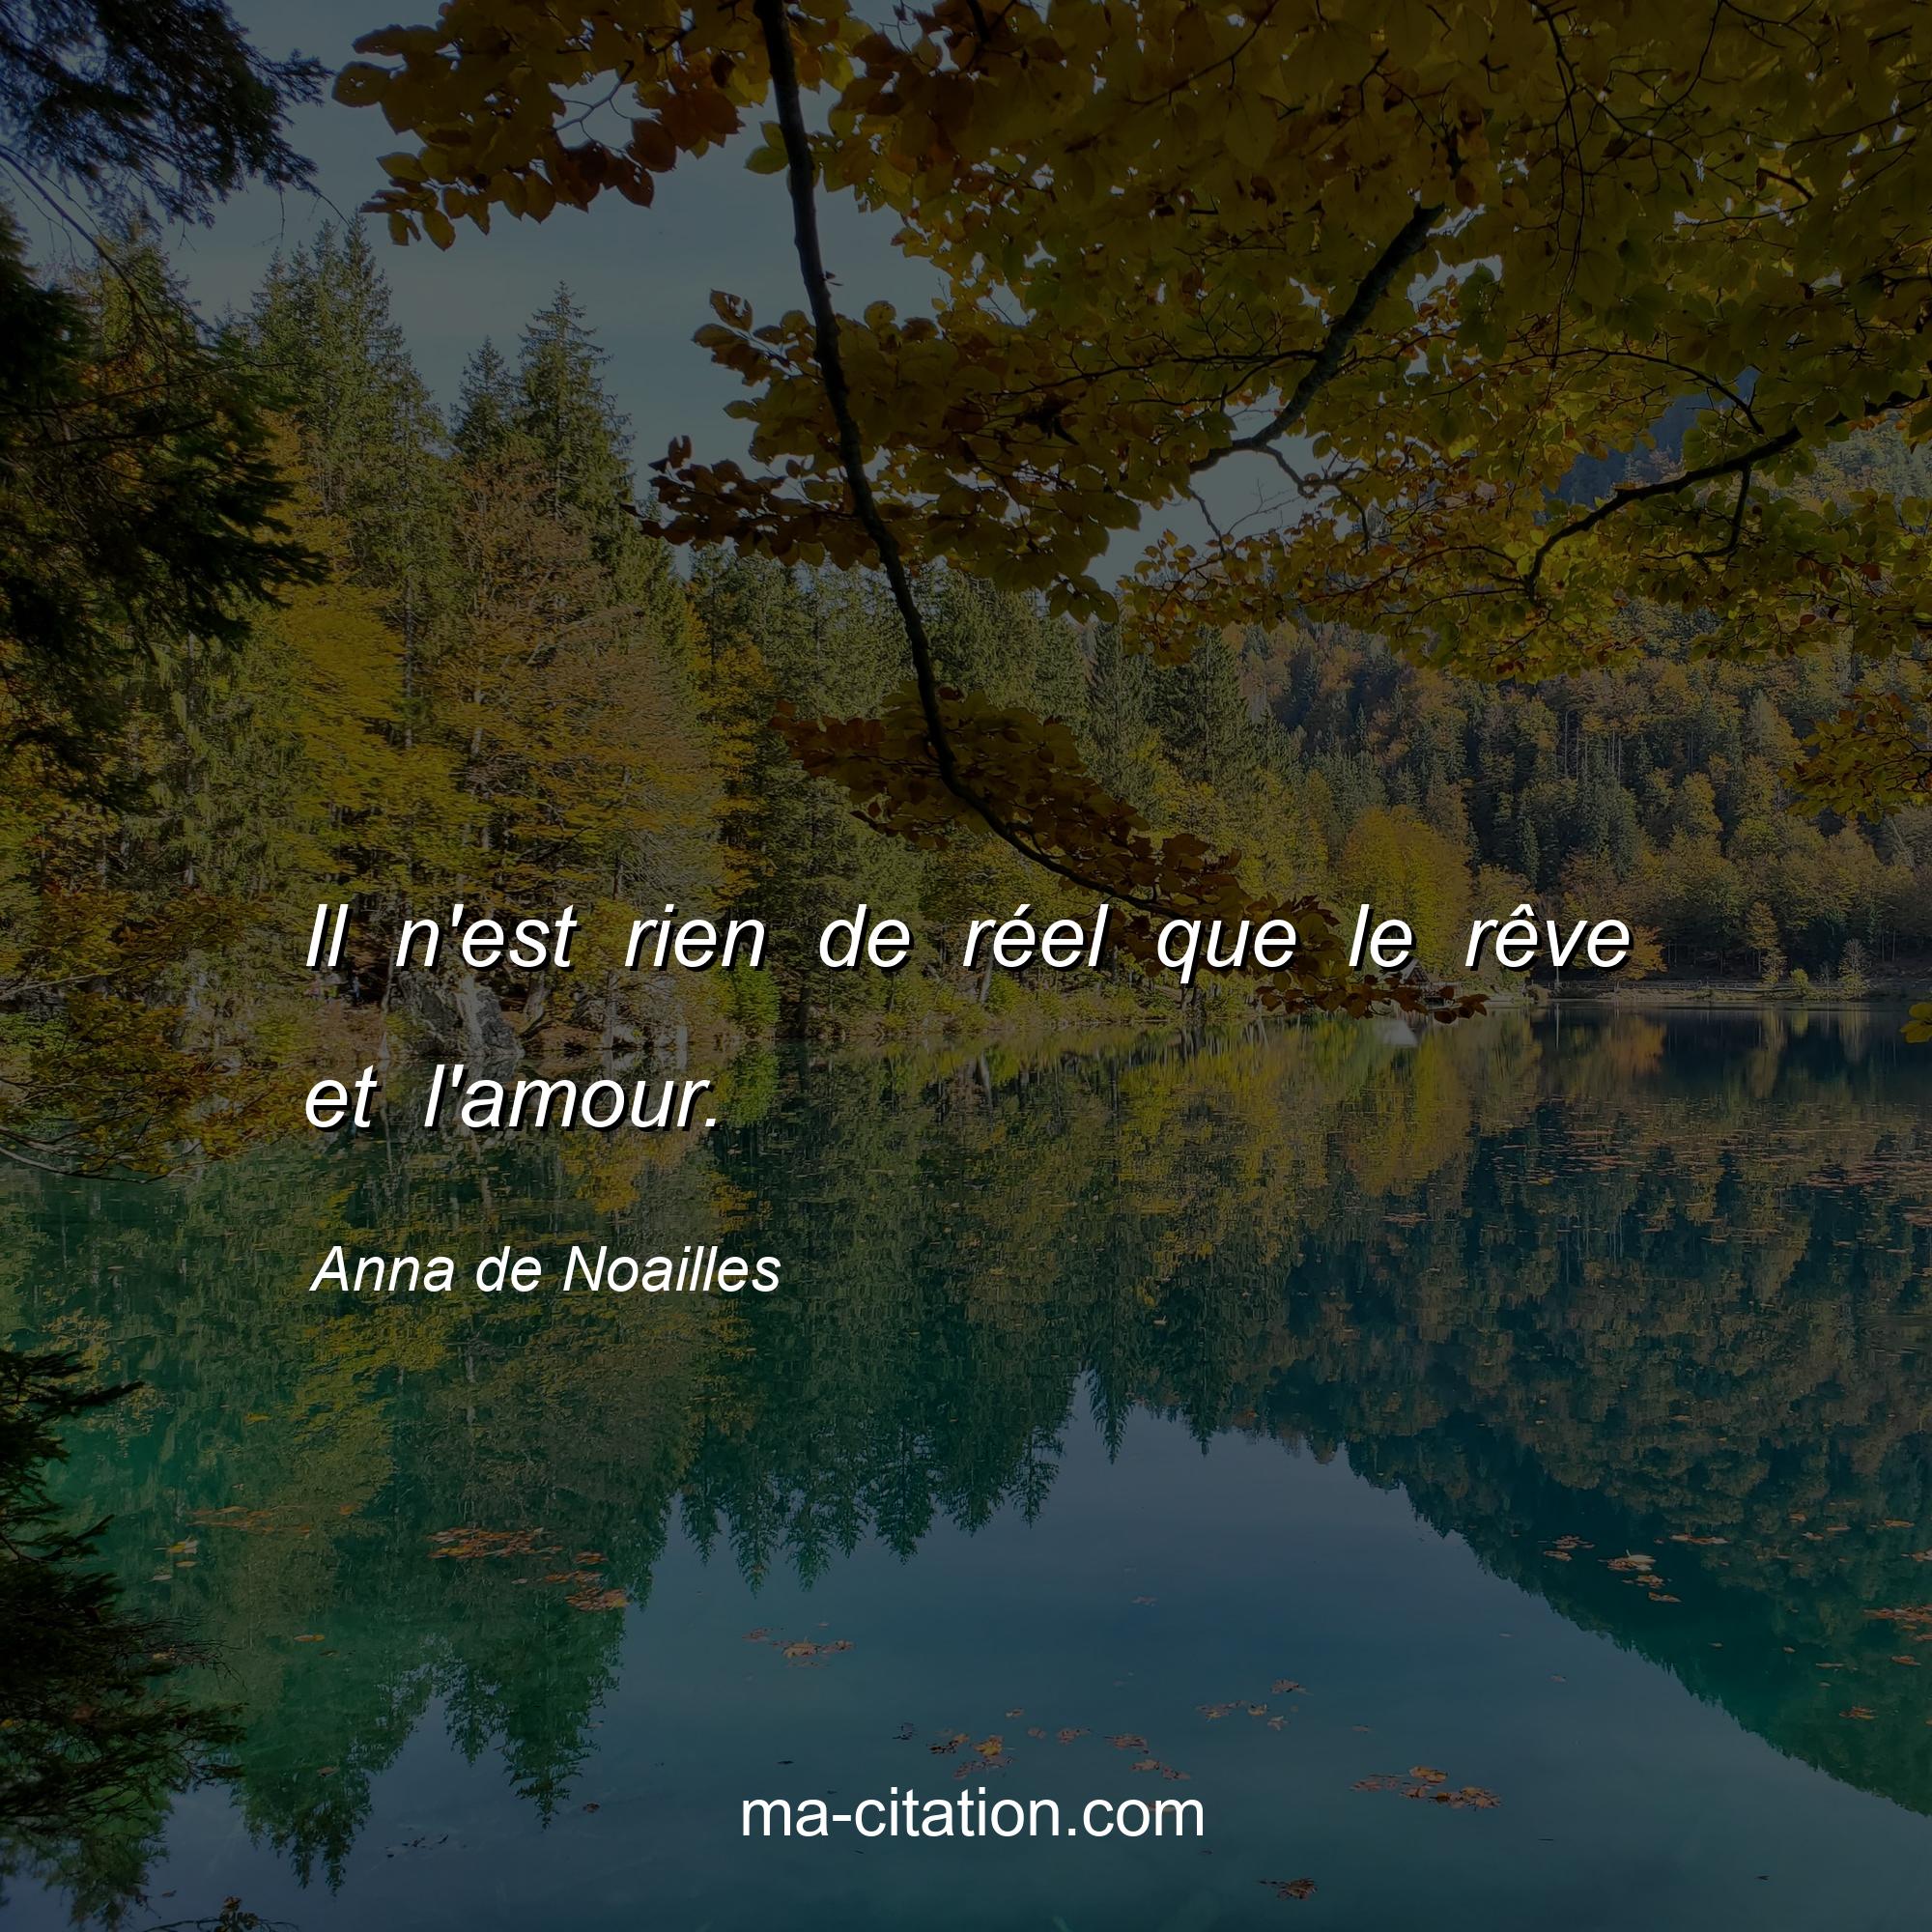 Anna de Noailles : Il n'est rien de réel que le rêve et l'amour.